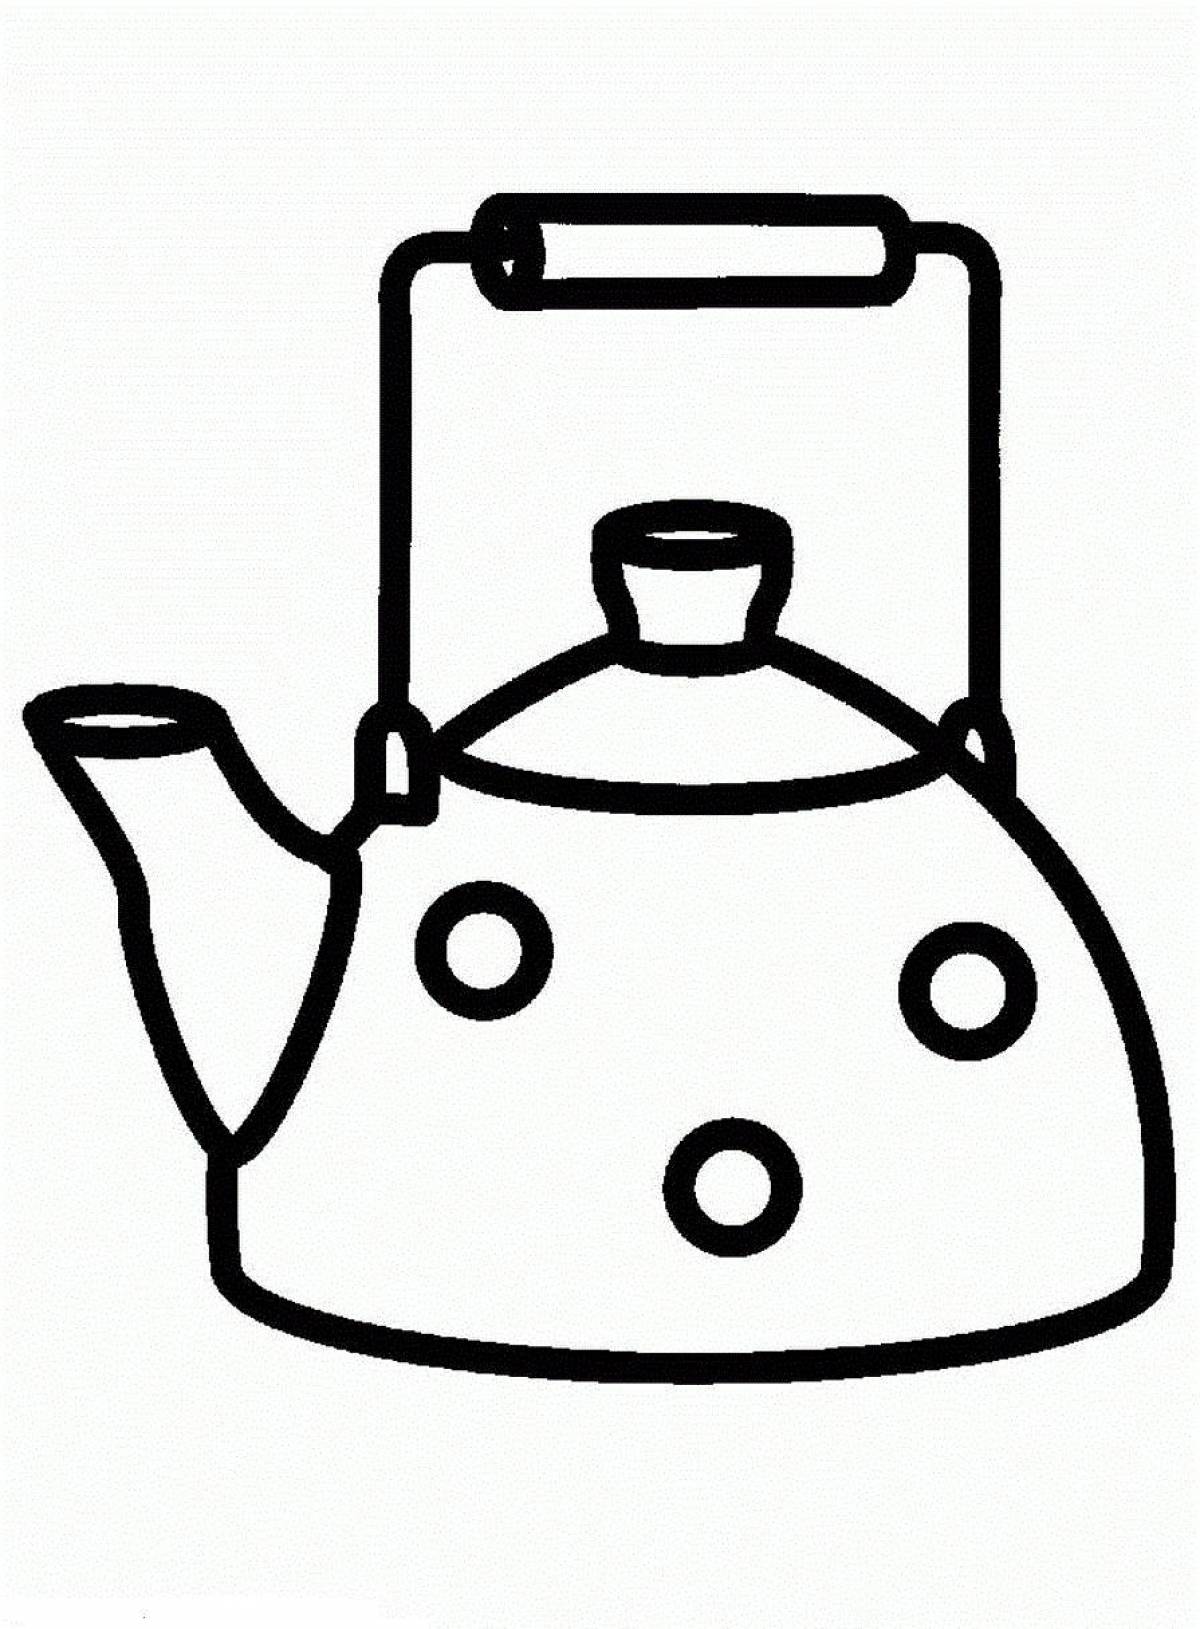 Polka dot teapot